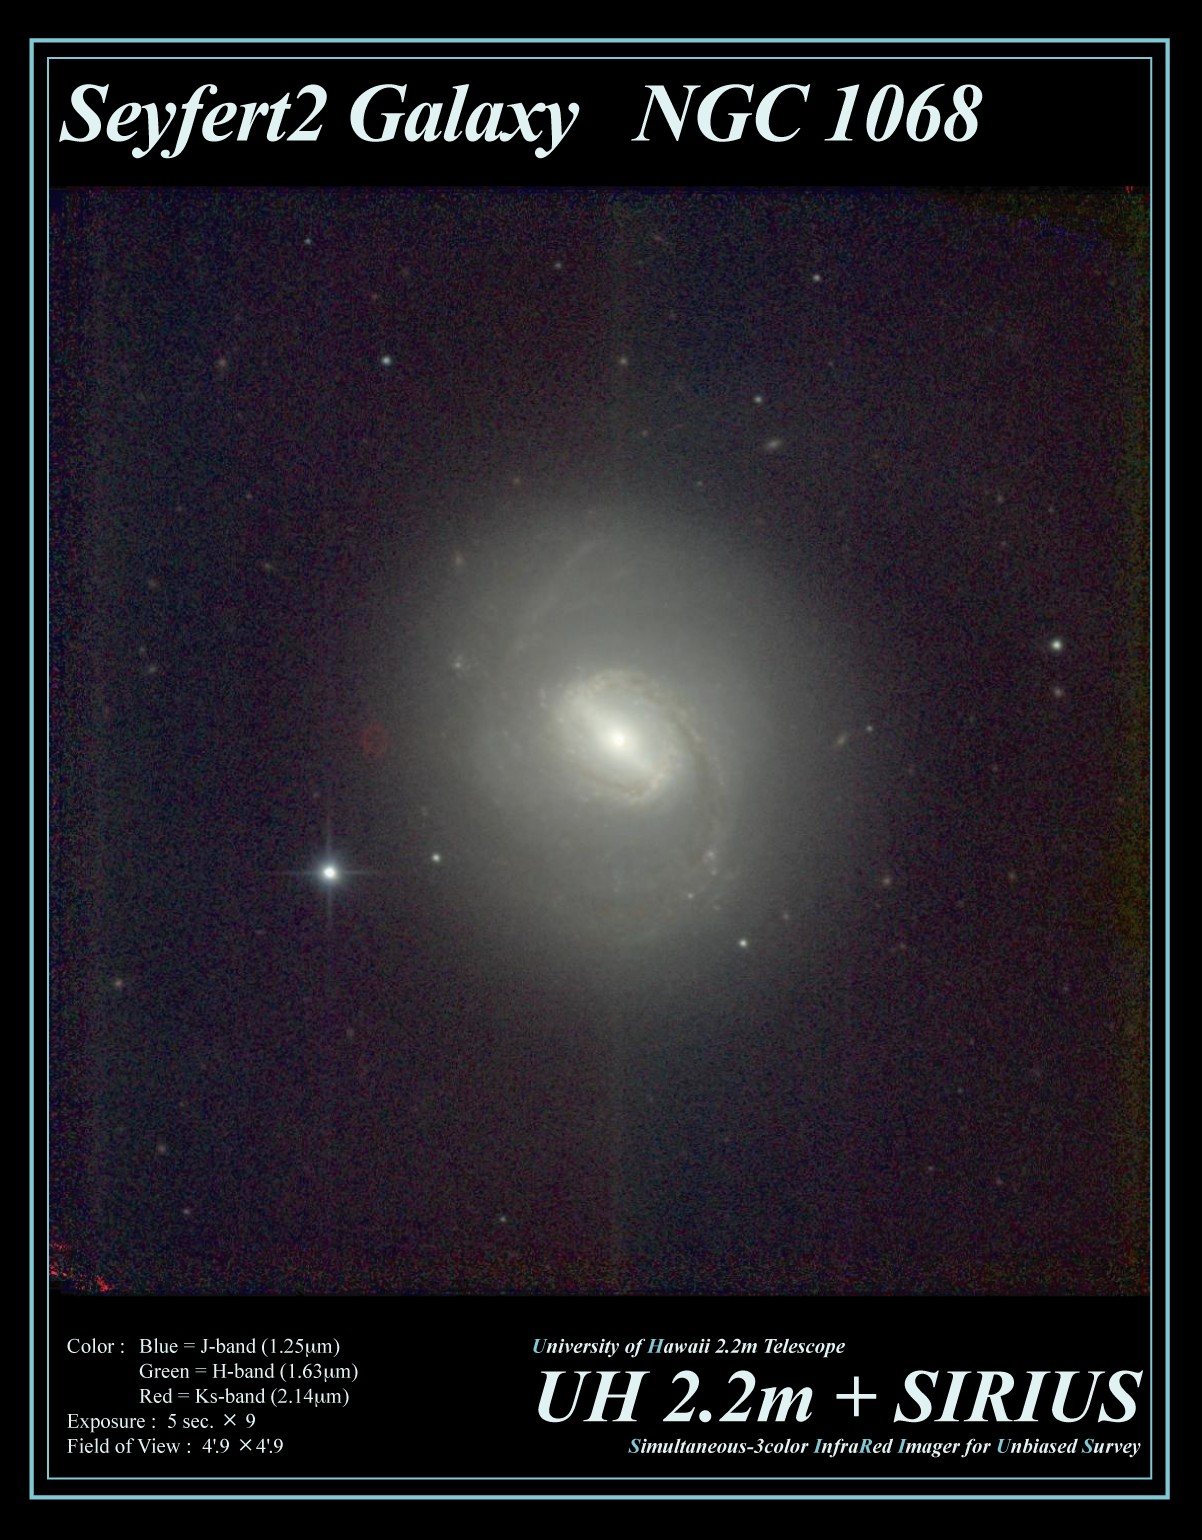 External Galaxy NGC1068